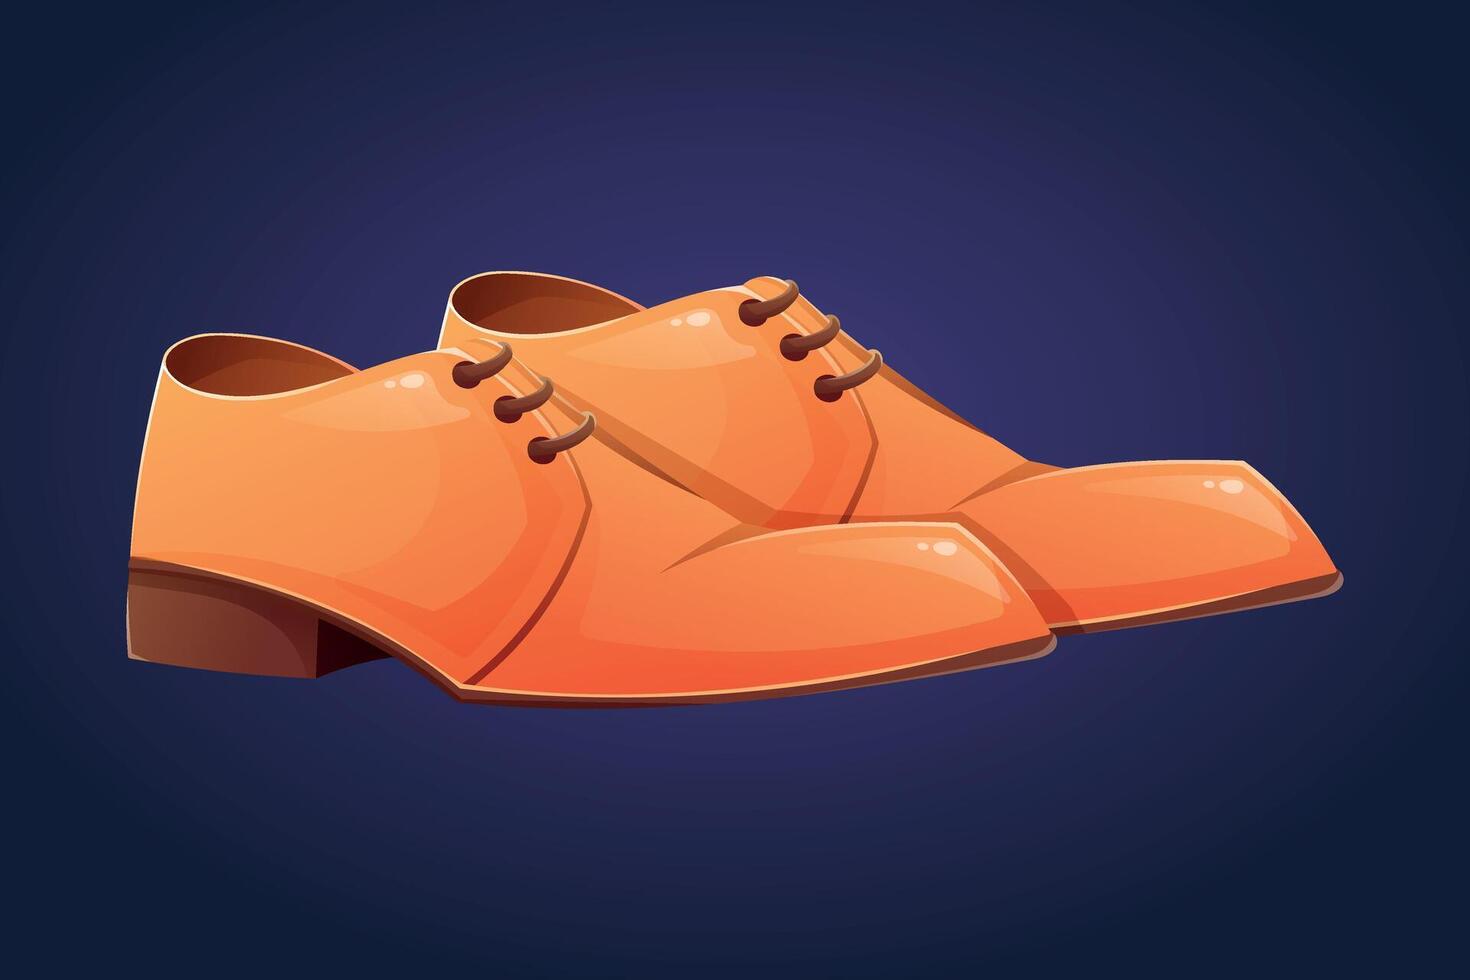 une paire de classique Pour des hommes cuir Orange des chaussures avec lacets. isolé dessin animé illustration de bottes. vecteur